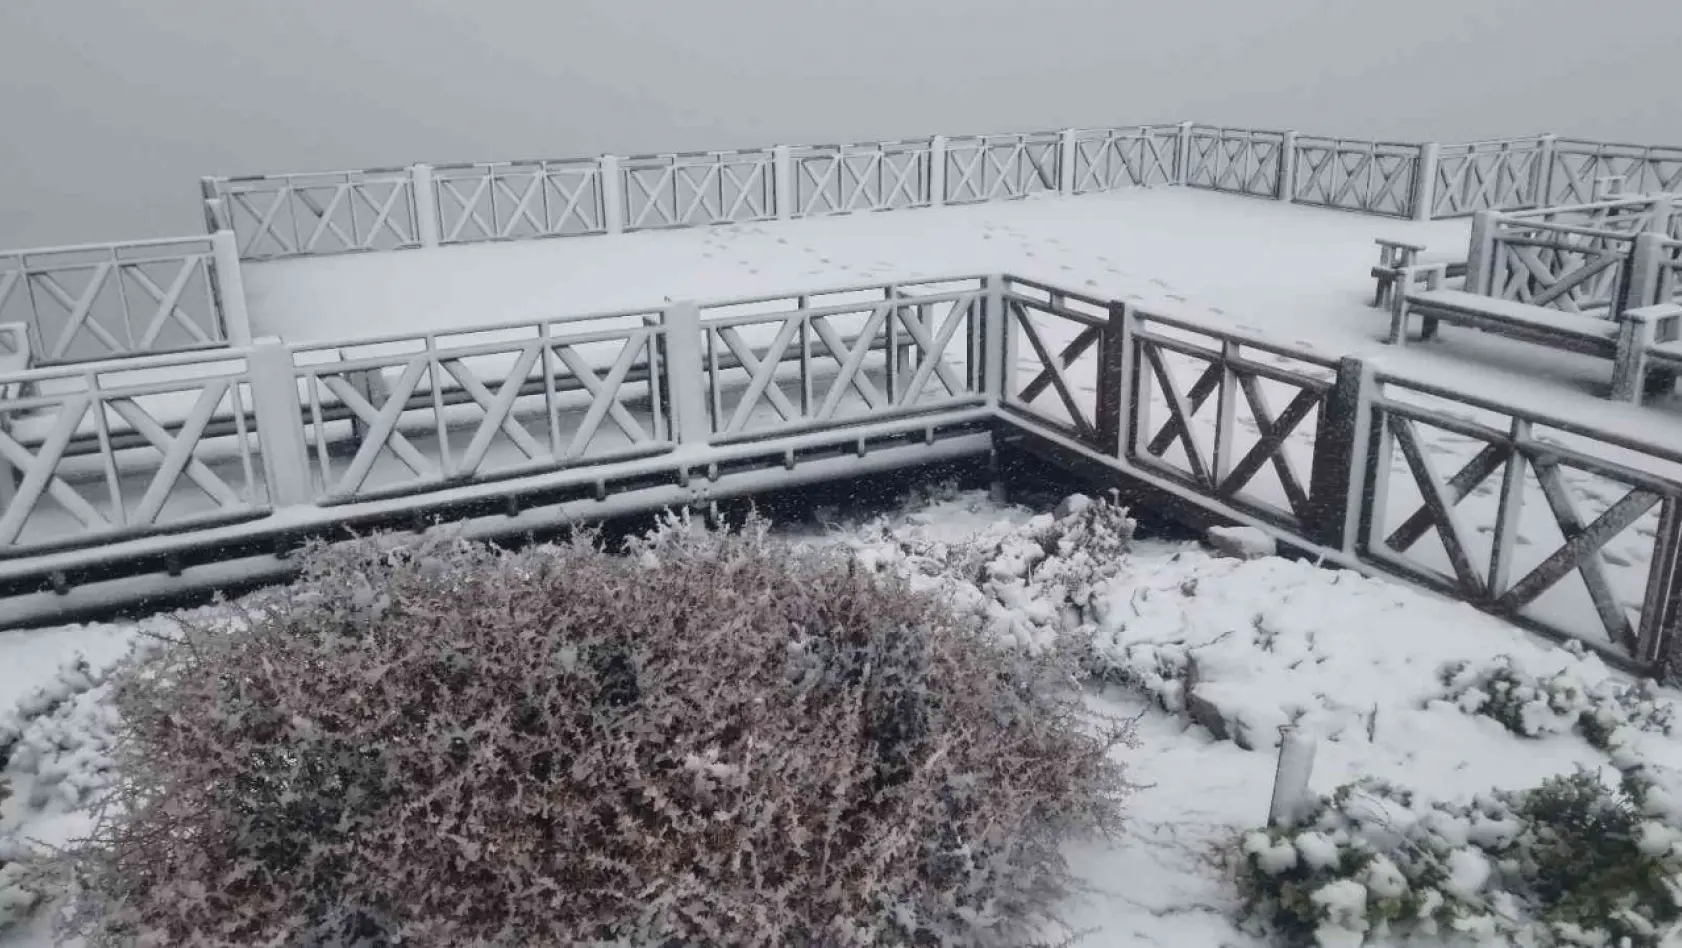 Spil Dağı Milli Parkı'na yılın ilk karı düştü